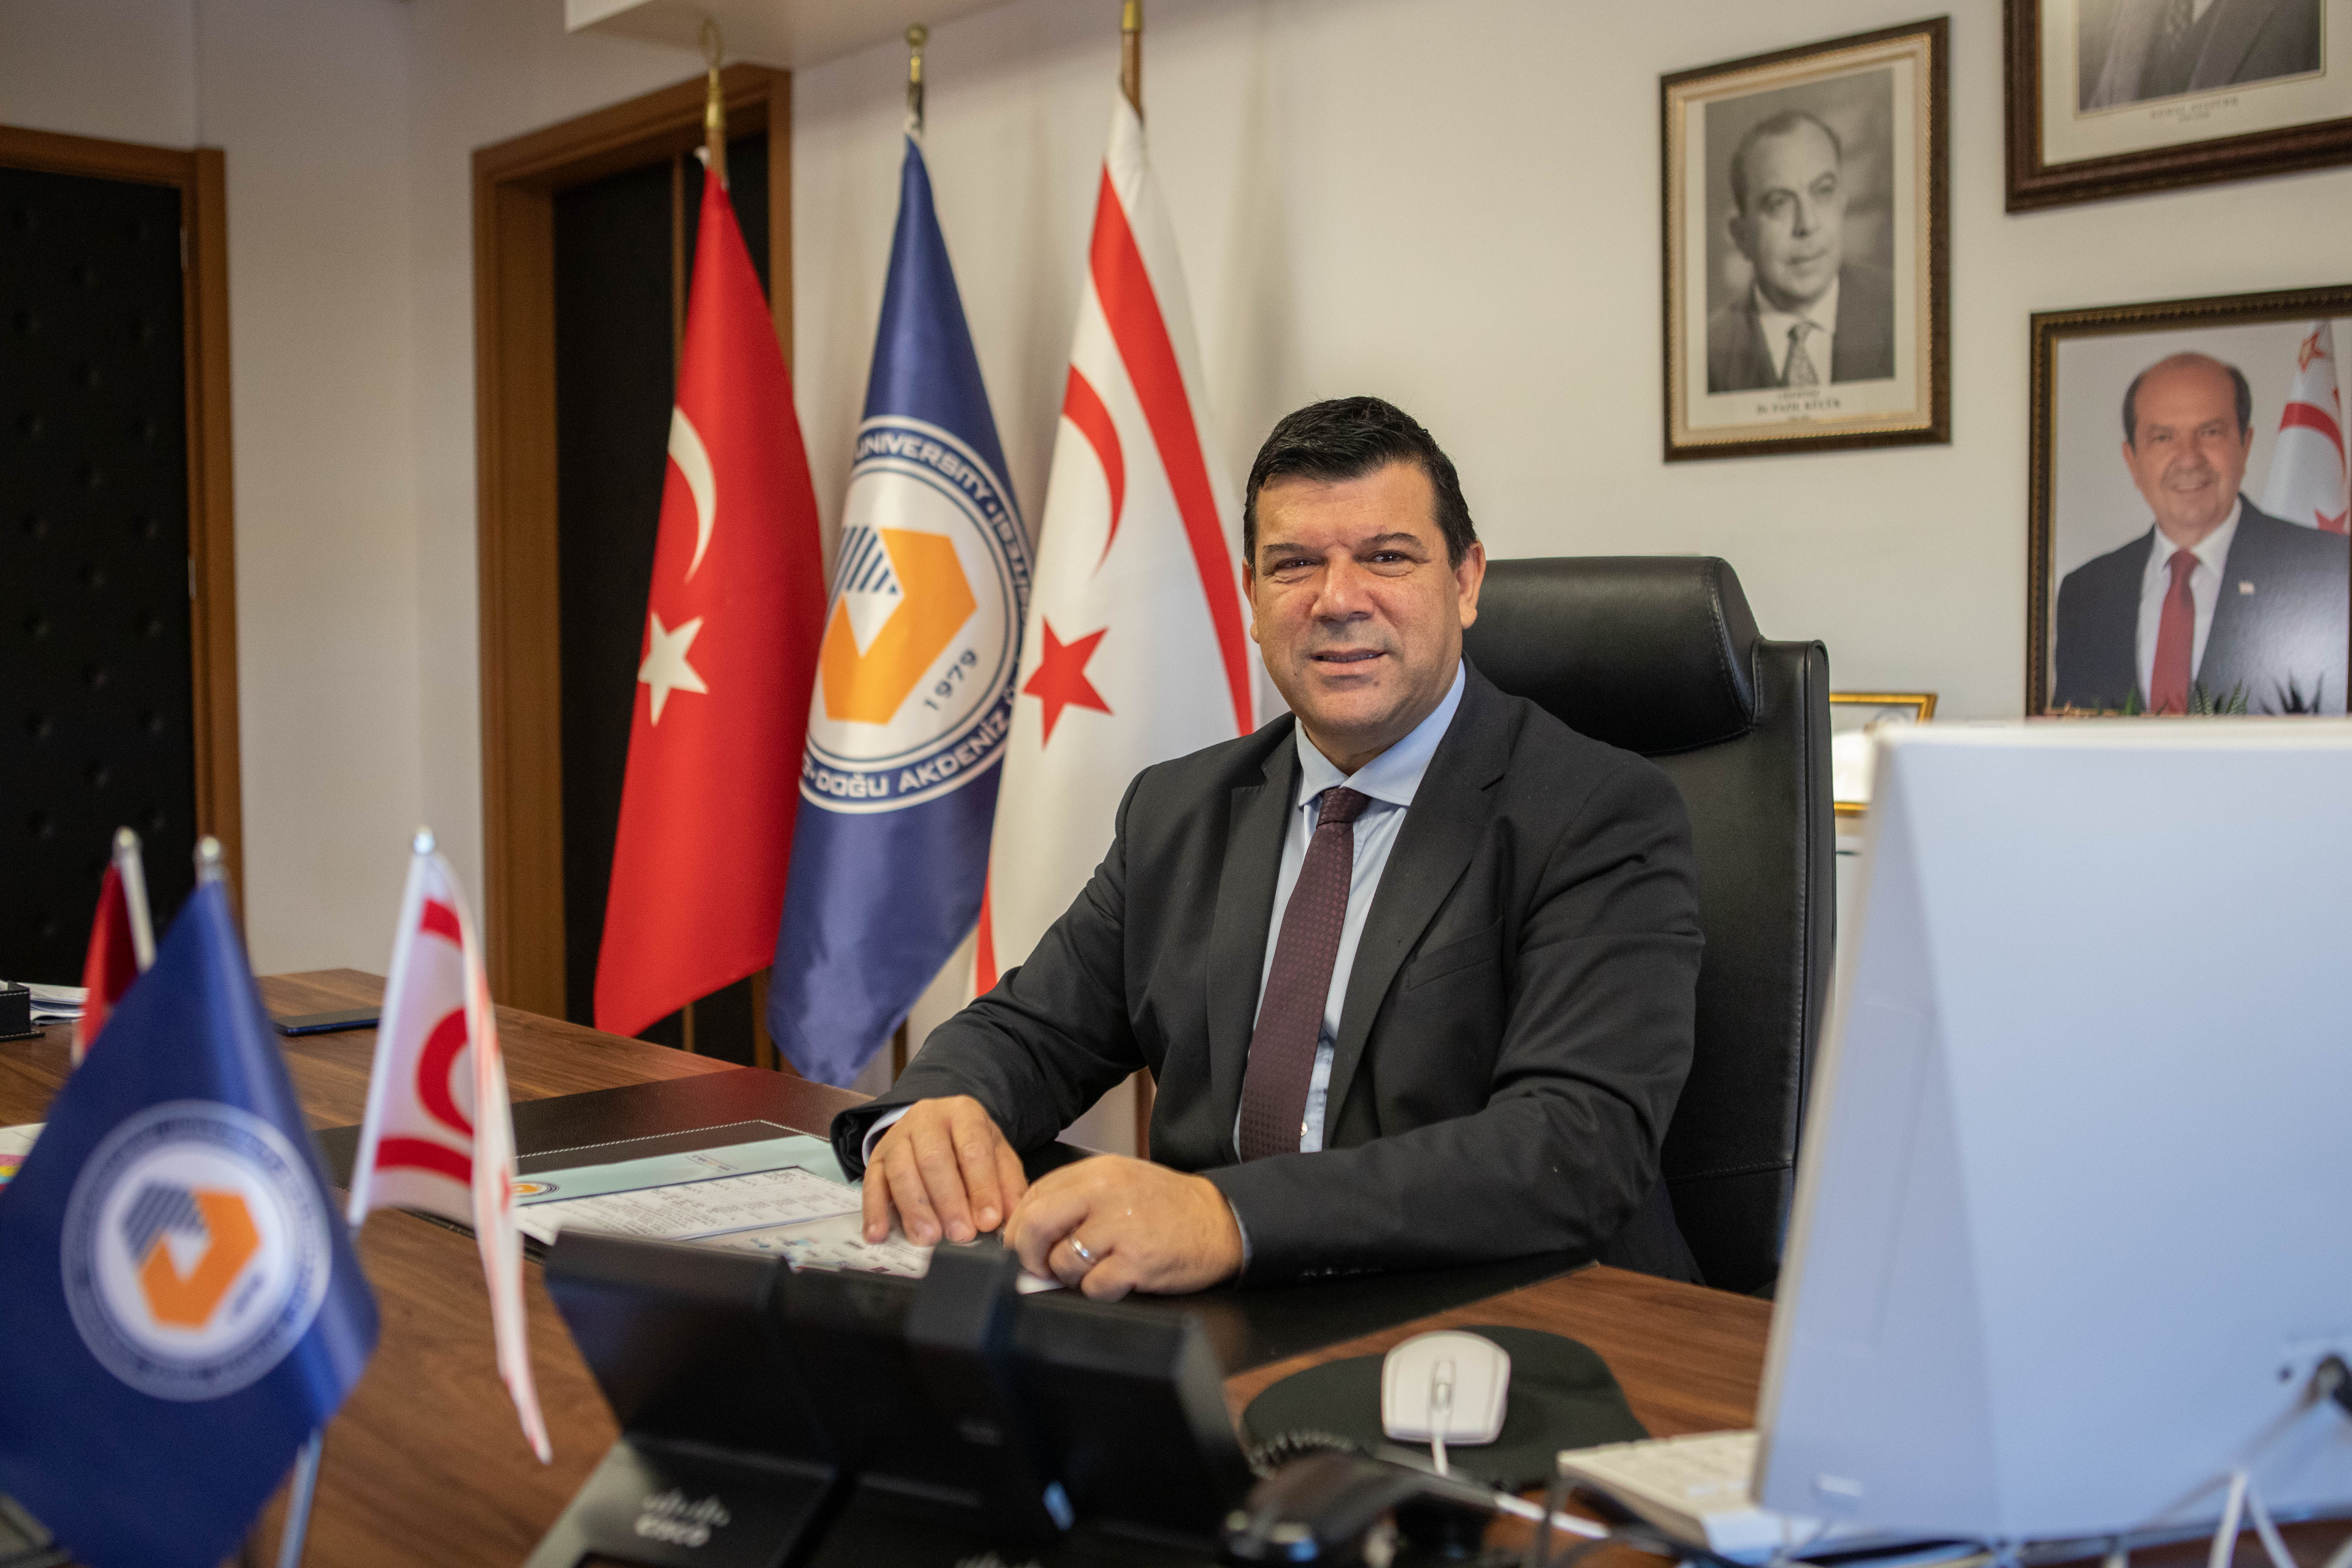 DAÜ Rektörü Prof. Dr. Hasan Kılıç: Çanakkale Zaferi'nin 109. Yılında Şehitleri Minnetle Anıyor